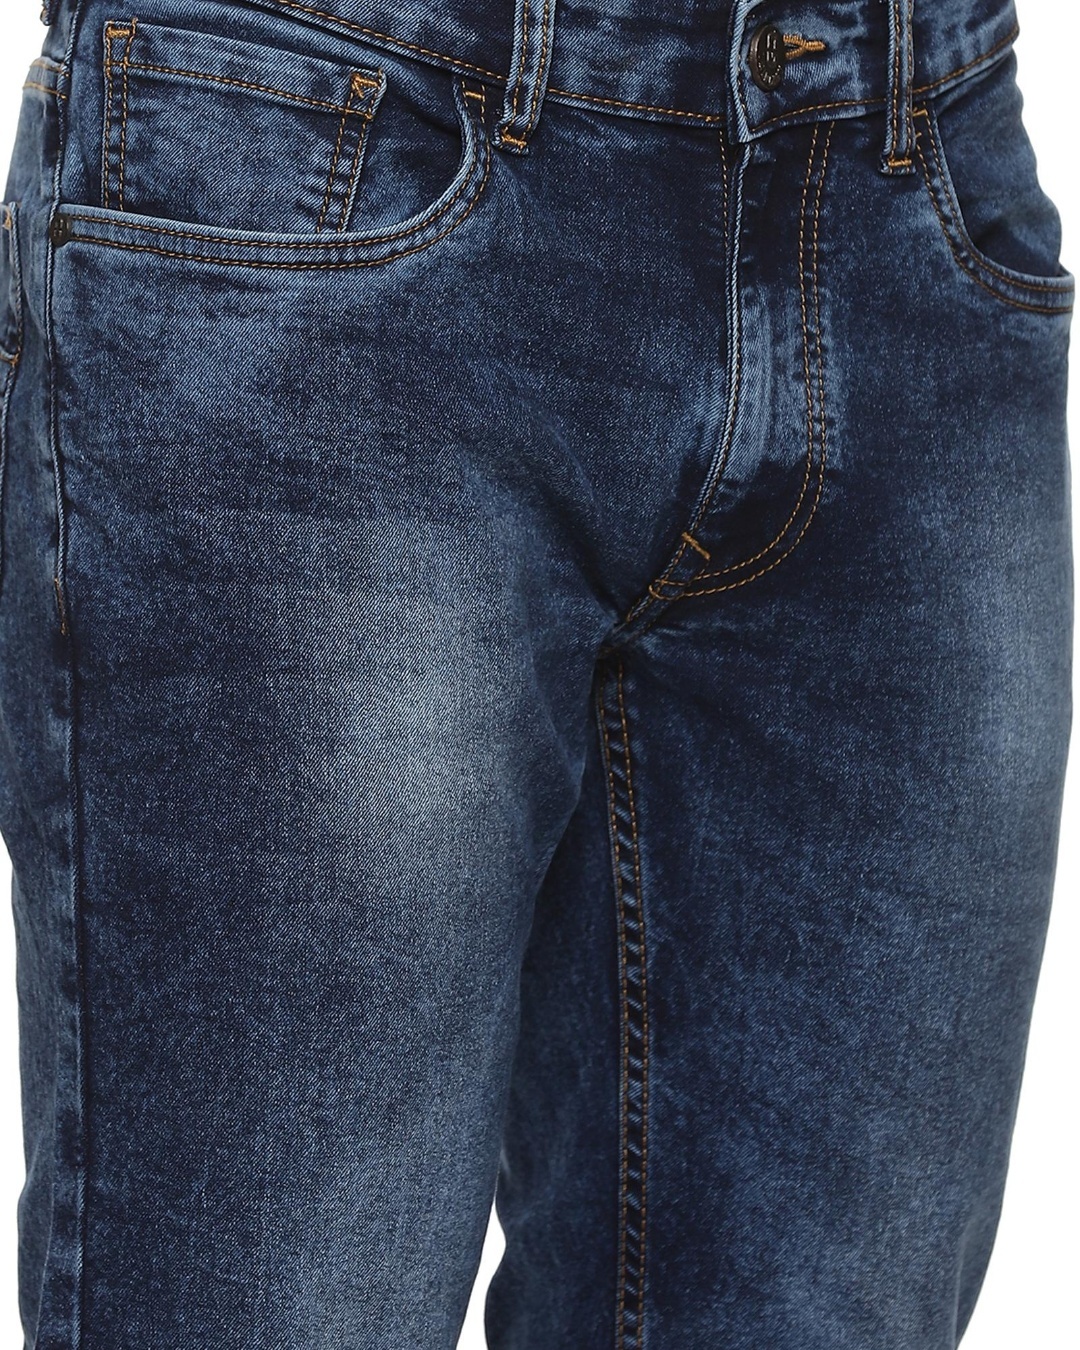 Buy Men's Blue Washed Slim Fit Jeans for Men Blue Online at Bewakoof